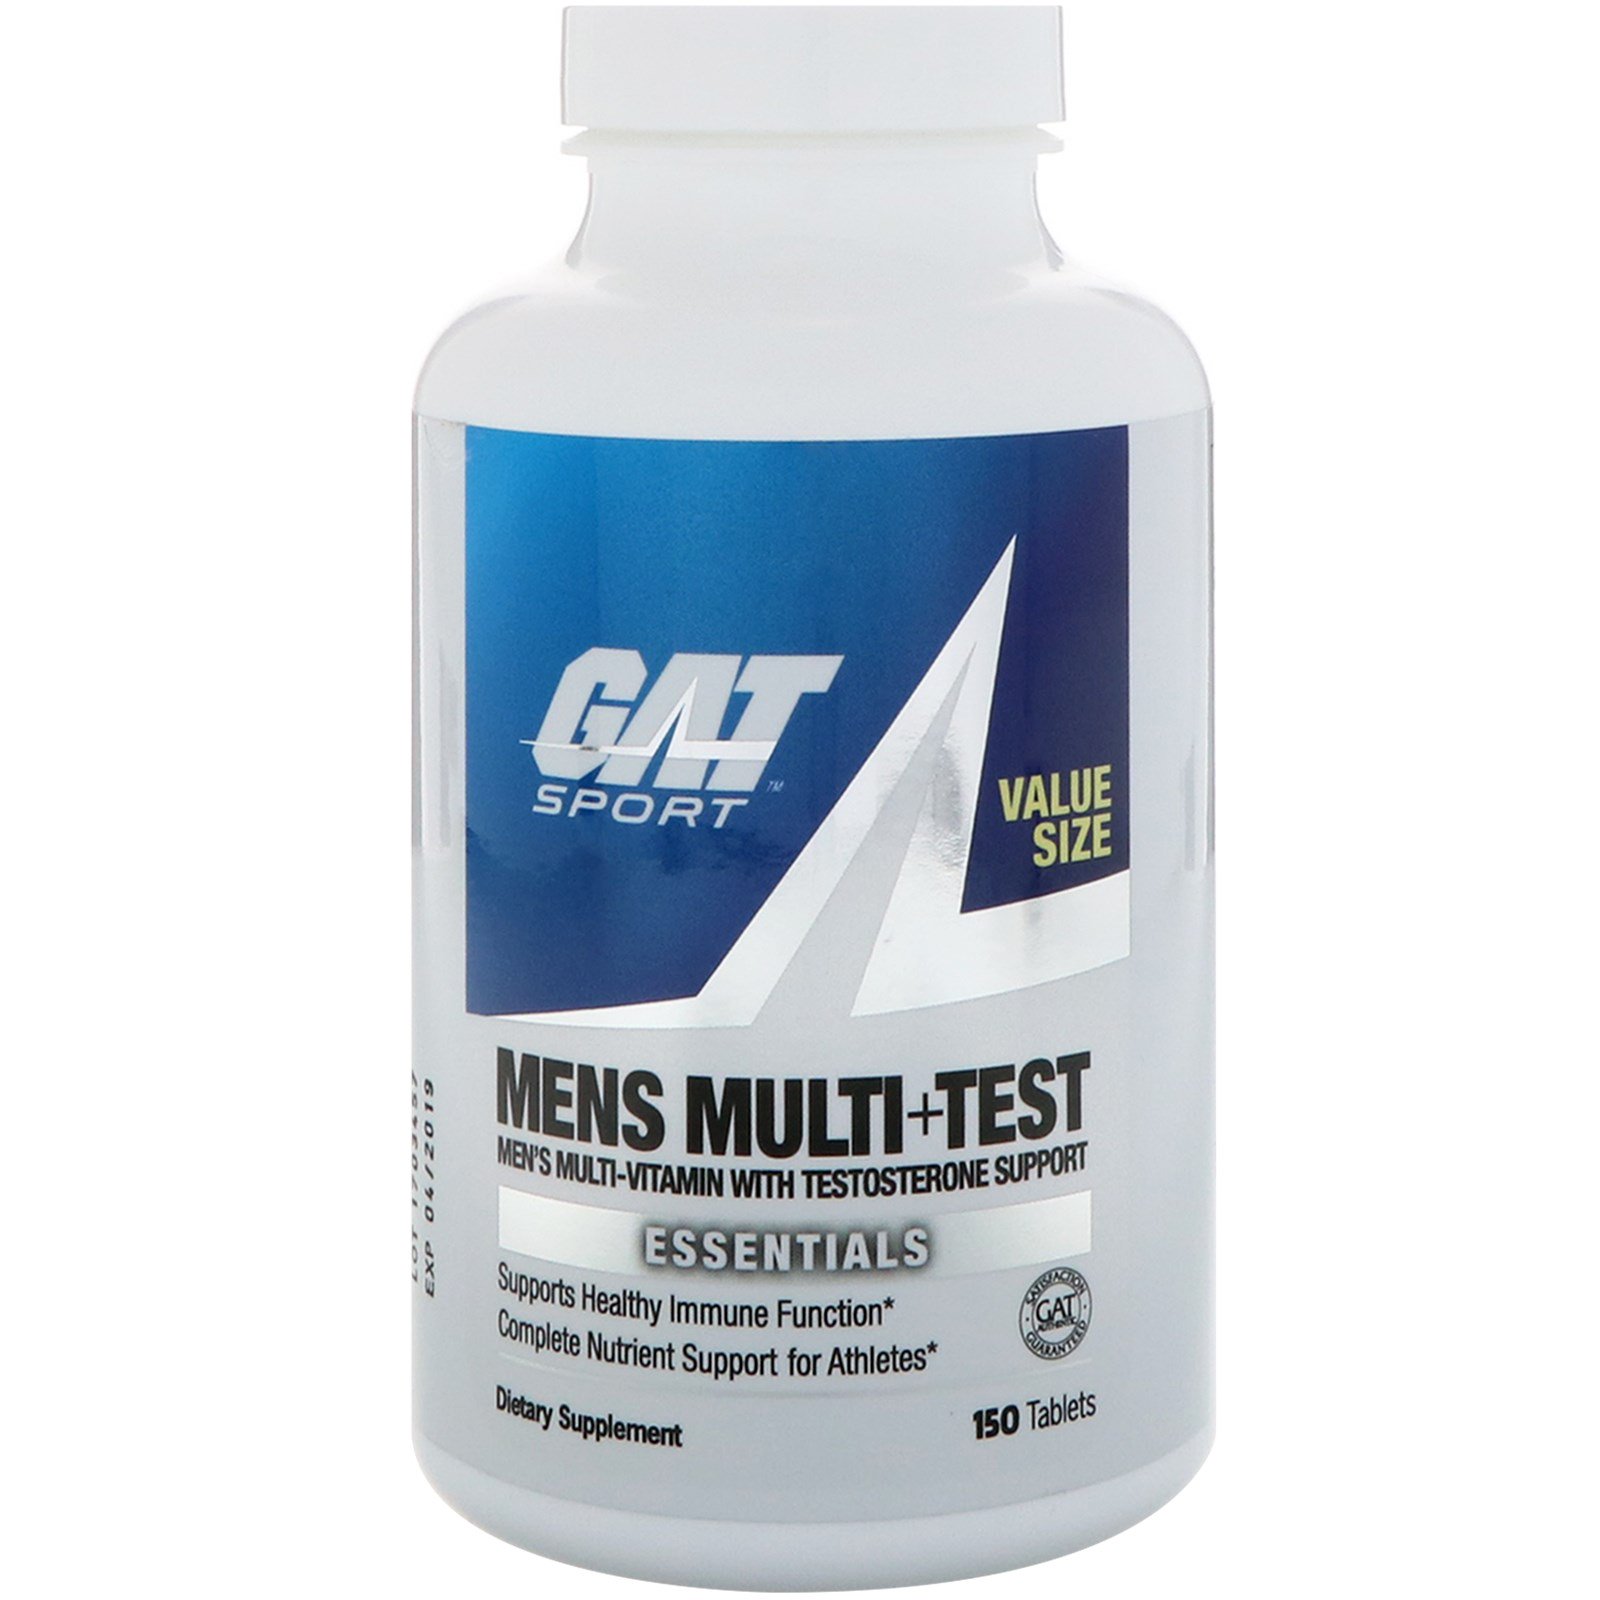 GAT, "Мульти + якорцы для мужчин", мультивитаминный комплекс для мужчин с добавлением экстракта якорцов стелющихся, 150 таблеток